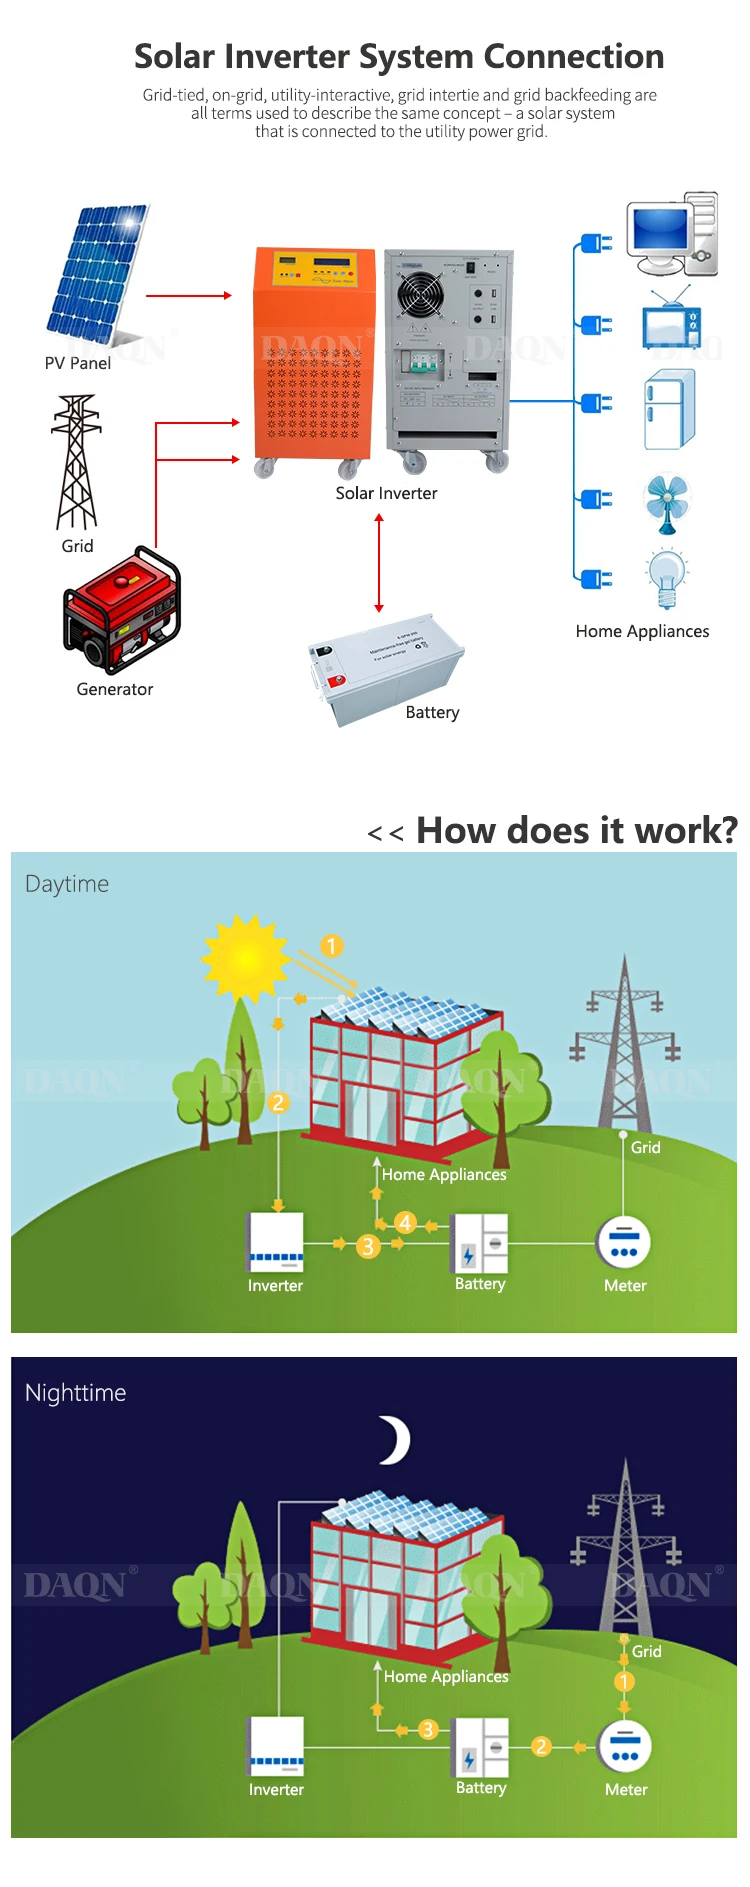 Off grid hybrid solar power home lighting system for Home Use 6KW On Grid Solar energy Inverter